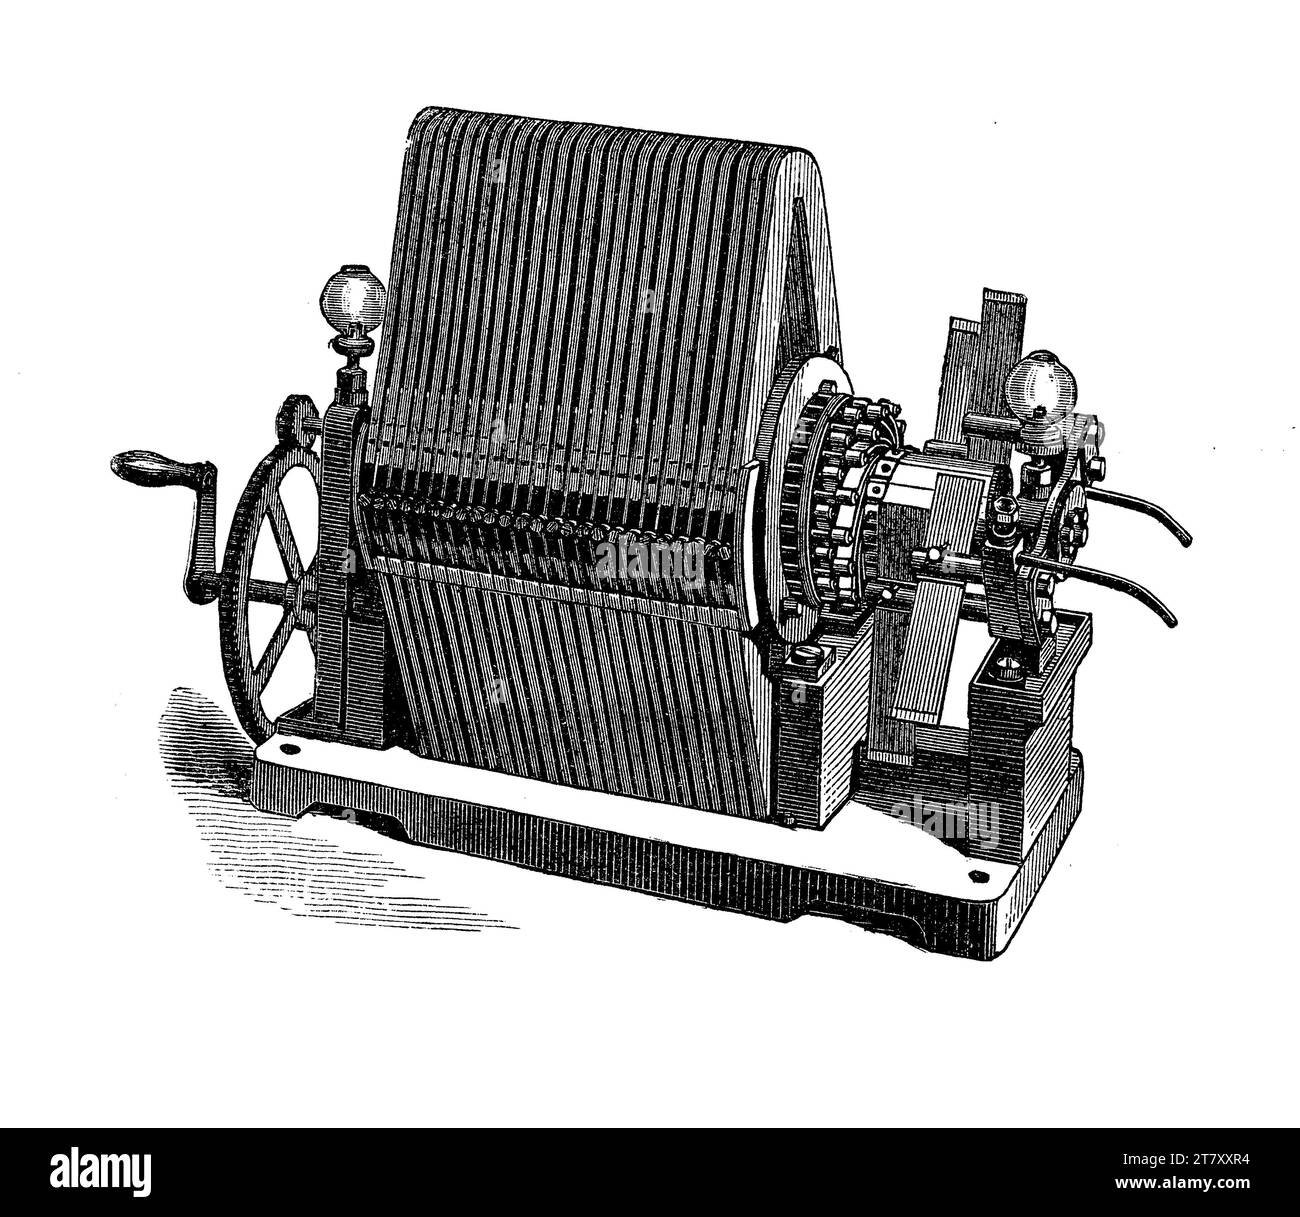 Hefner-Alteneck magneto electric machine, large dynamo. Friedrich Heinrich Philipp Franz von Hefner-Alteneck ( 1845 - 1904) was a German electrical engineer and one of the closest aides of Werner von Siemens. Stock Photo